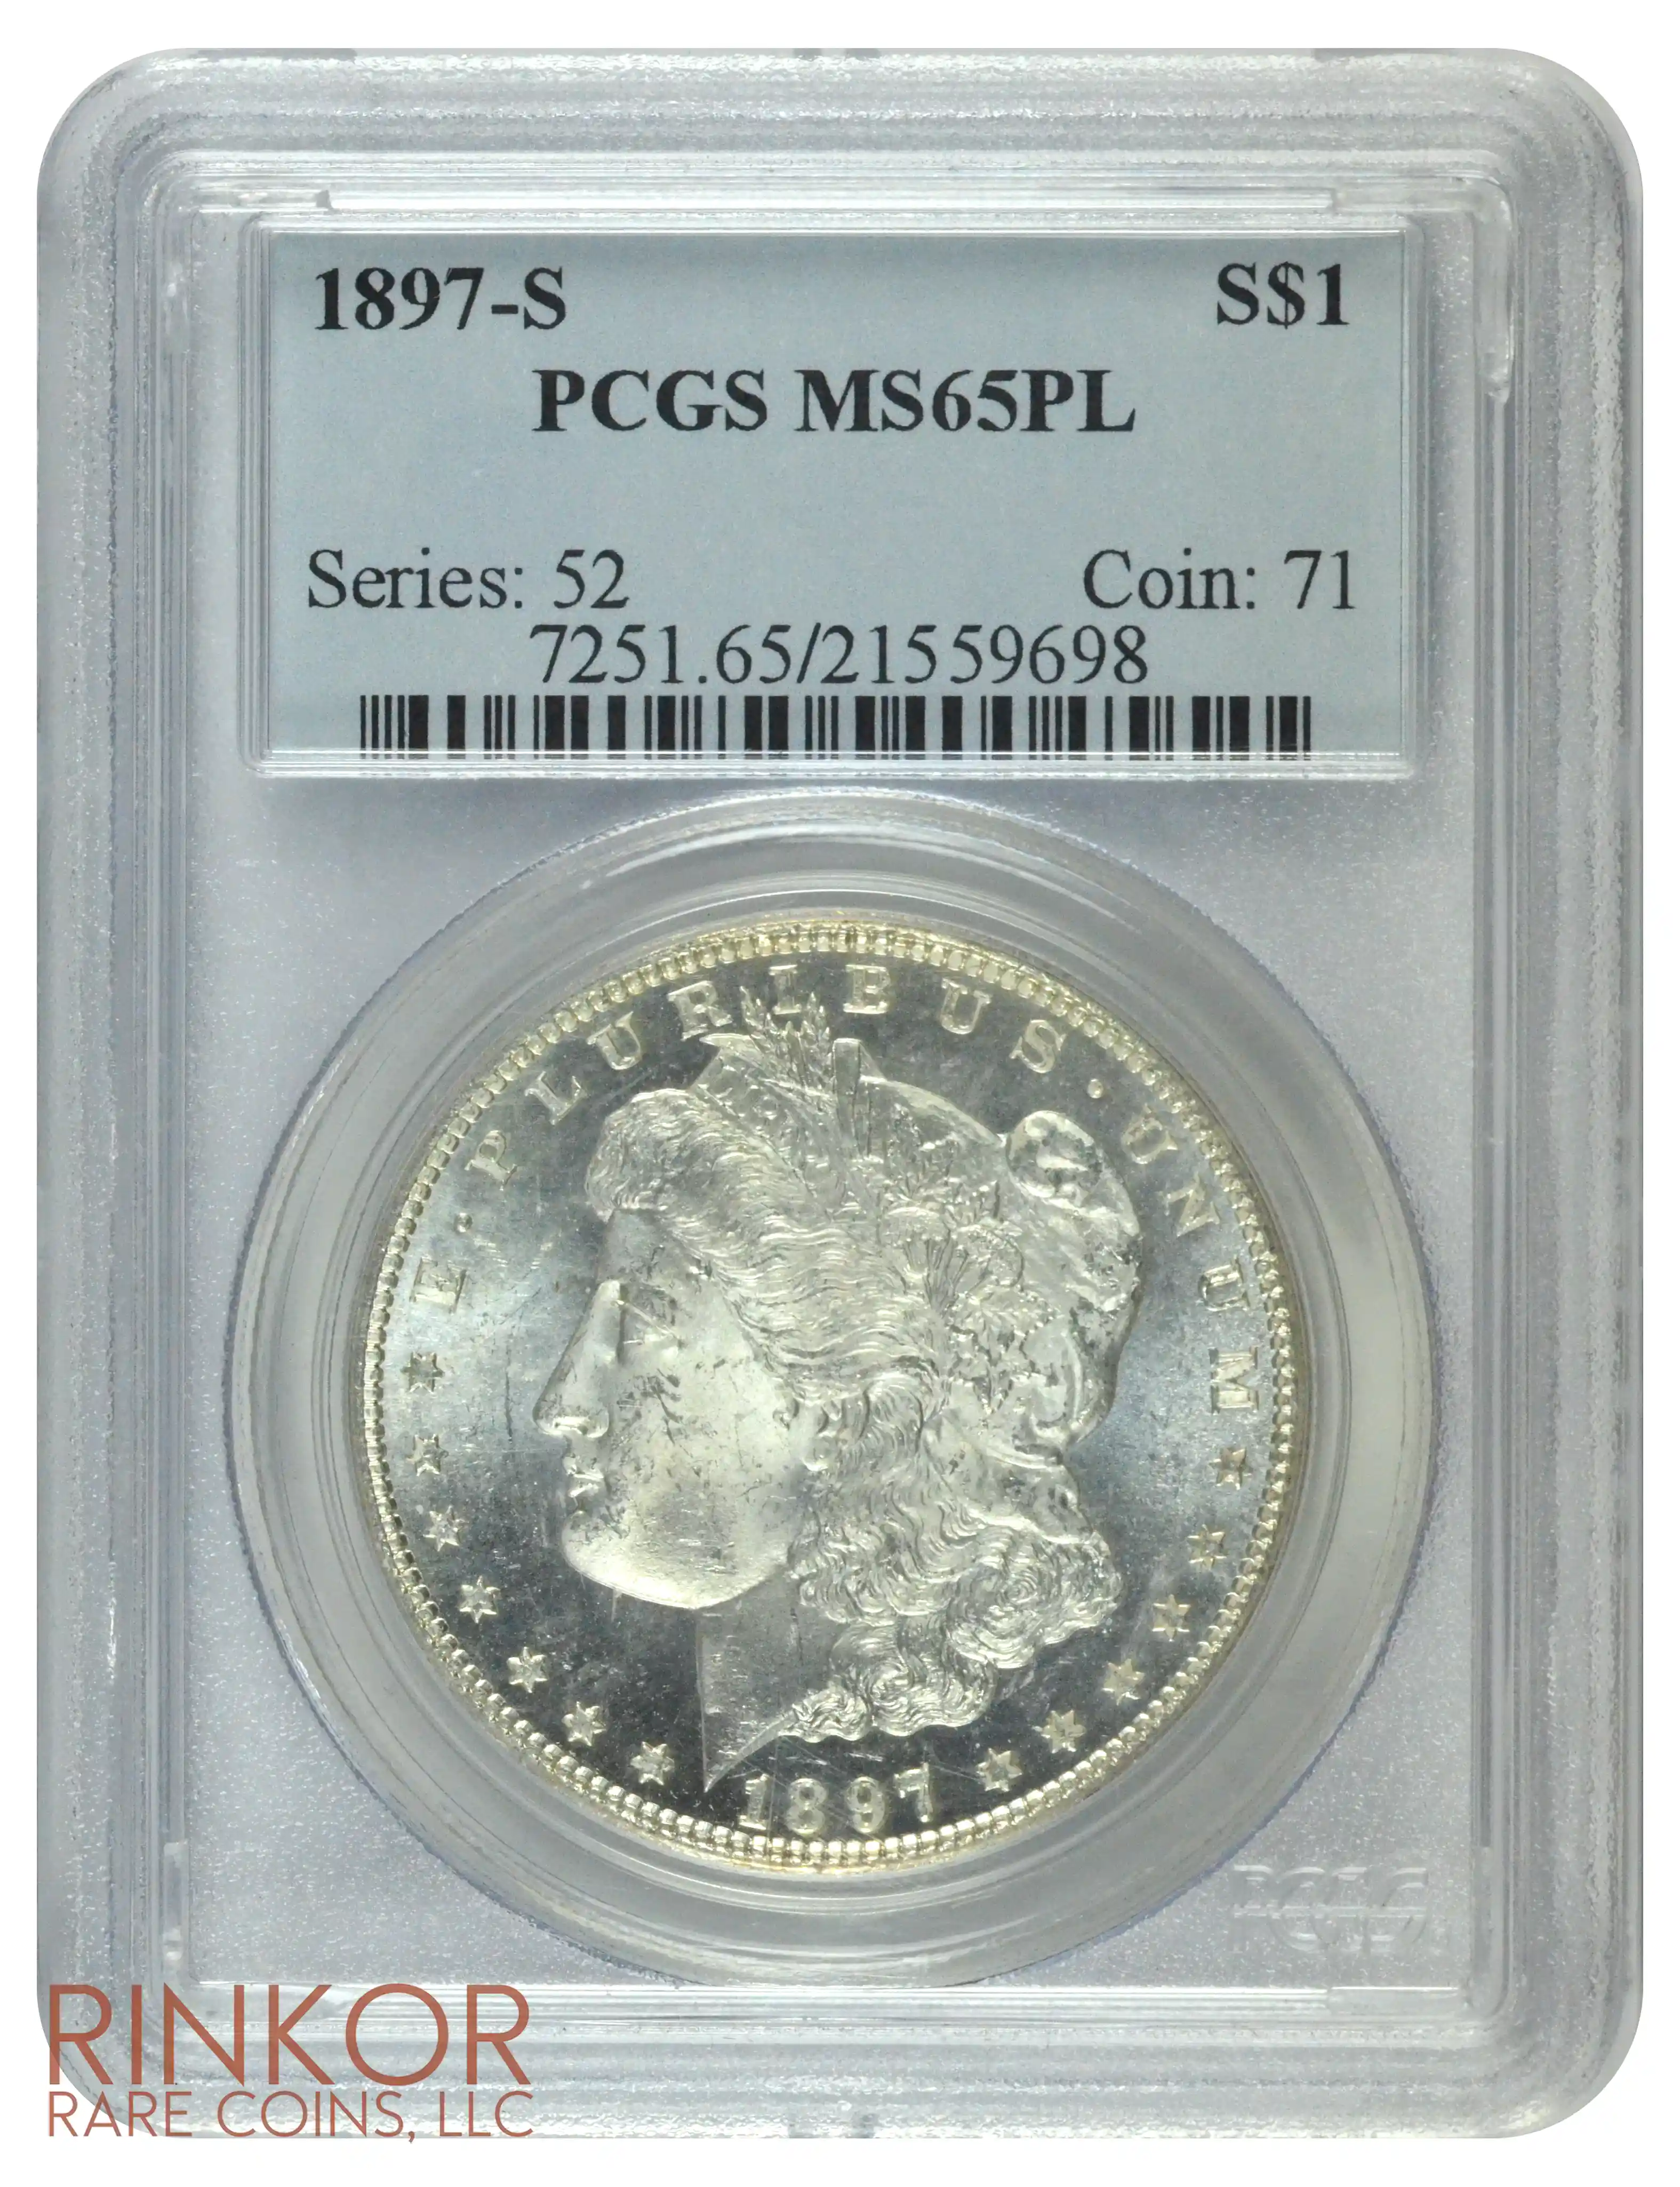 1897-S $1 PCGS MS 65 PL